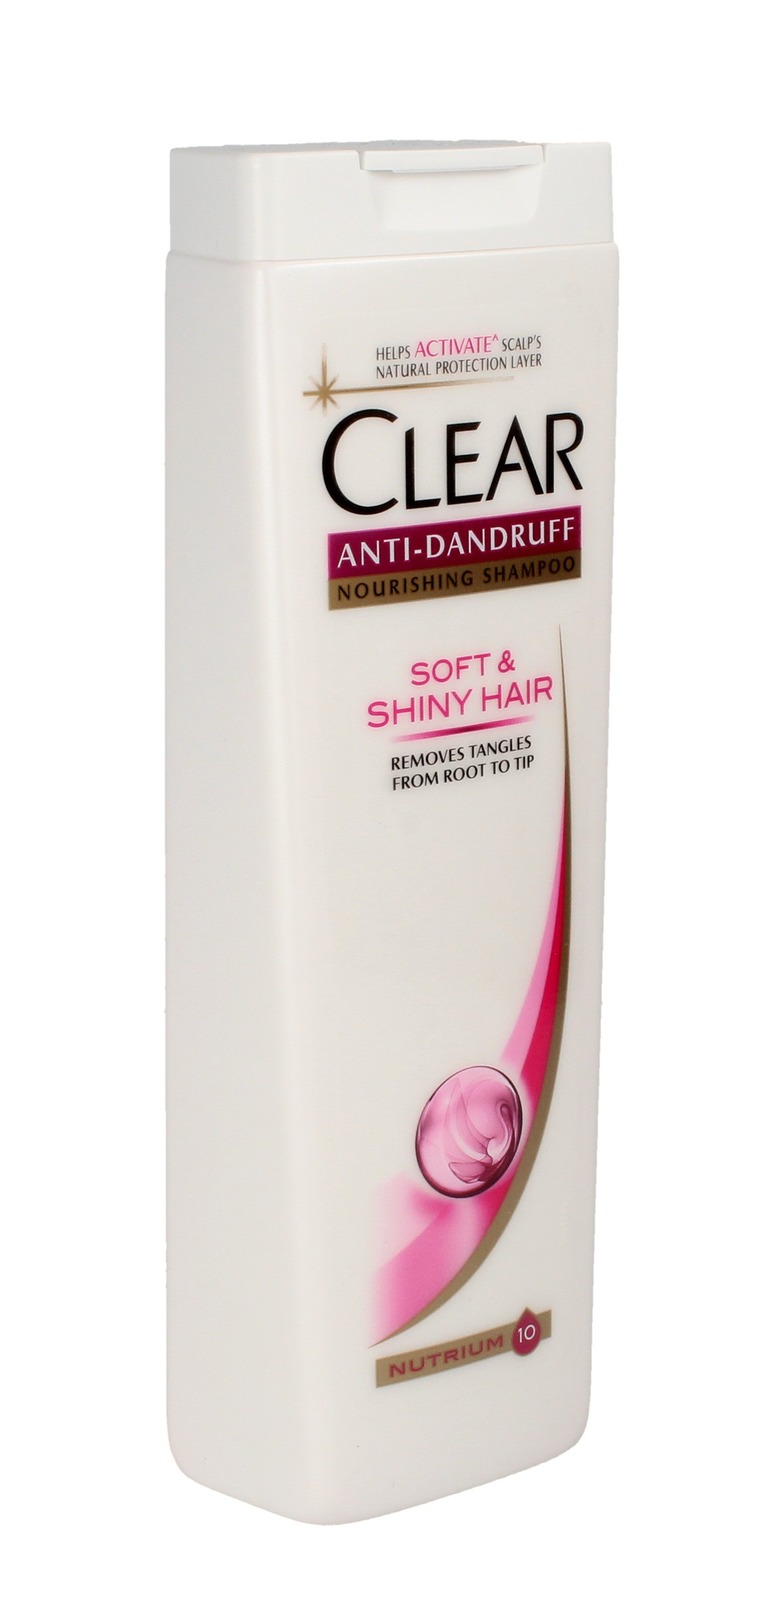 szampon do włosów clear